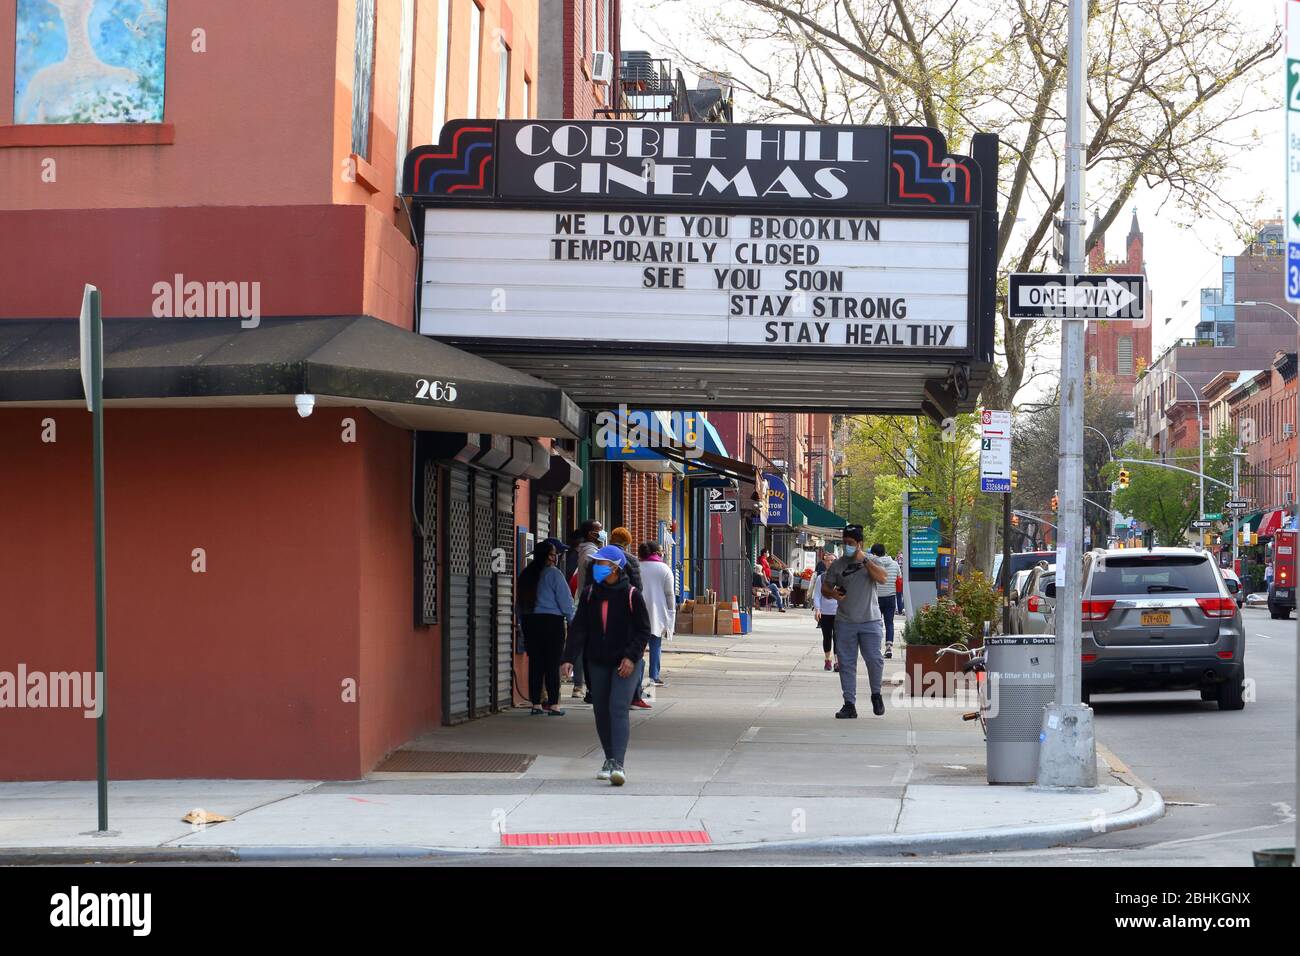 Eine hoffnungsvolle Botschaft auf dem Festzelt der Cobble Hill Cinemas lautet: "We Love You Brooklyn, vorübergehend geschlossen... WEITERE INFORMATIONEN FINDEN SIE UNTER „VOLLSTÄNDIGE BILDUNTERSCHRIFT“ Stockfoto